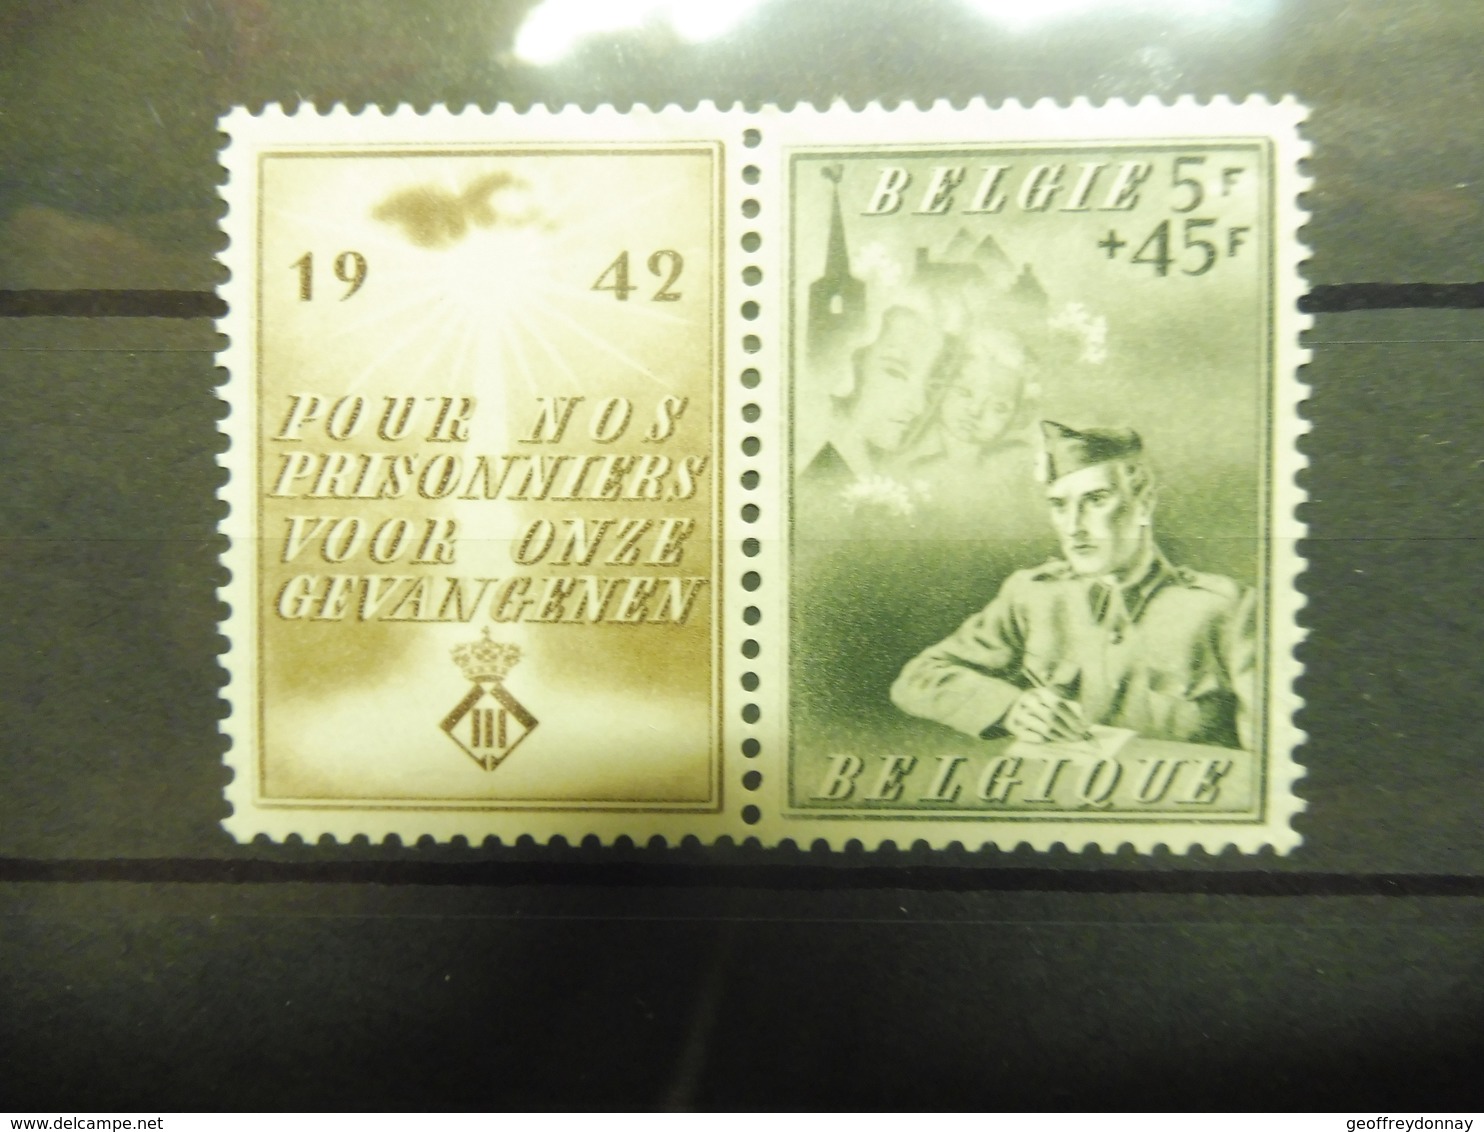 Belgique Belgie 602 Prisonnier Neuf Luxe ** - Unused Stamps